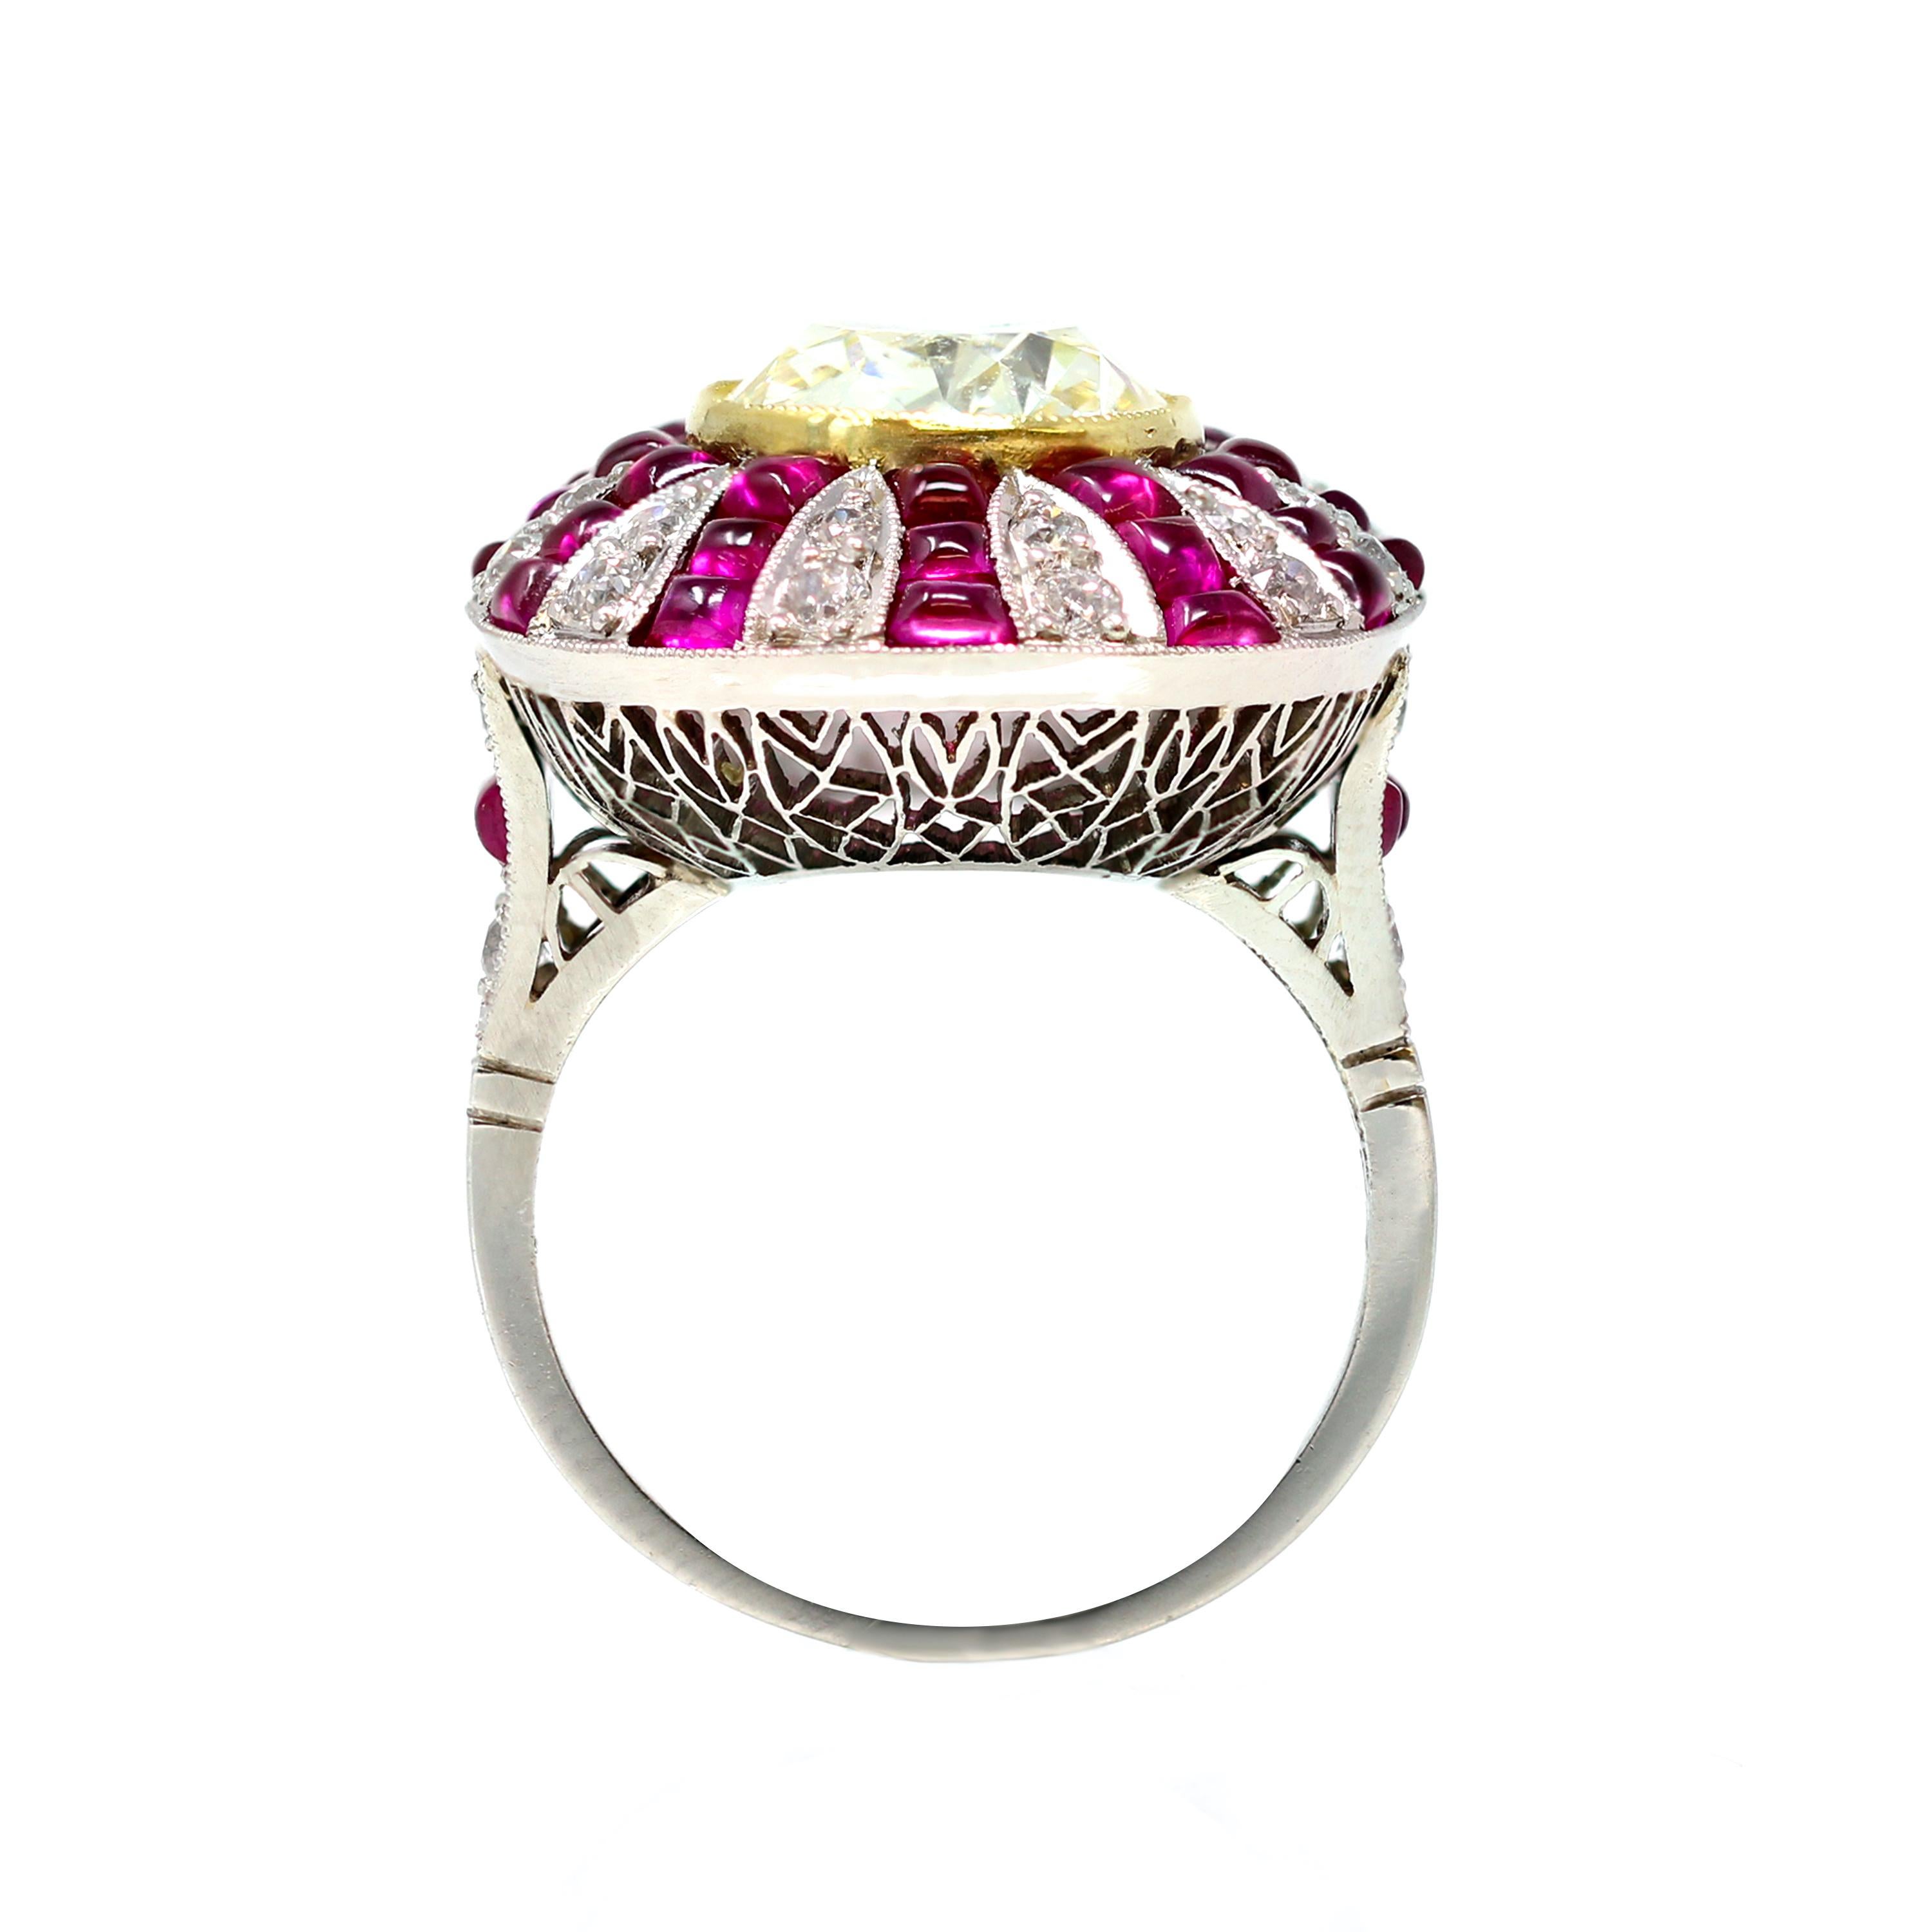 Ein atemberaubendes Beispiel reiner Kunstfertigkeit ist dieser Ring im Art-Déco-Stil mit einem GIA-zertifizierten gelben Fancy-Diamanten von 4,73 Karat, der kunstvoll mit Cabochon-Rubinen und Diamanten im Altminenschliff verziert ist. Dieser